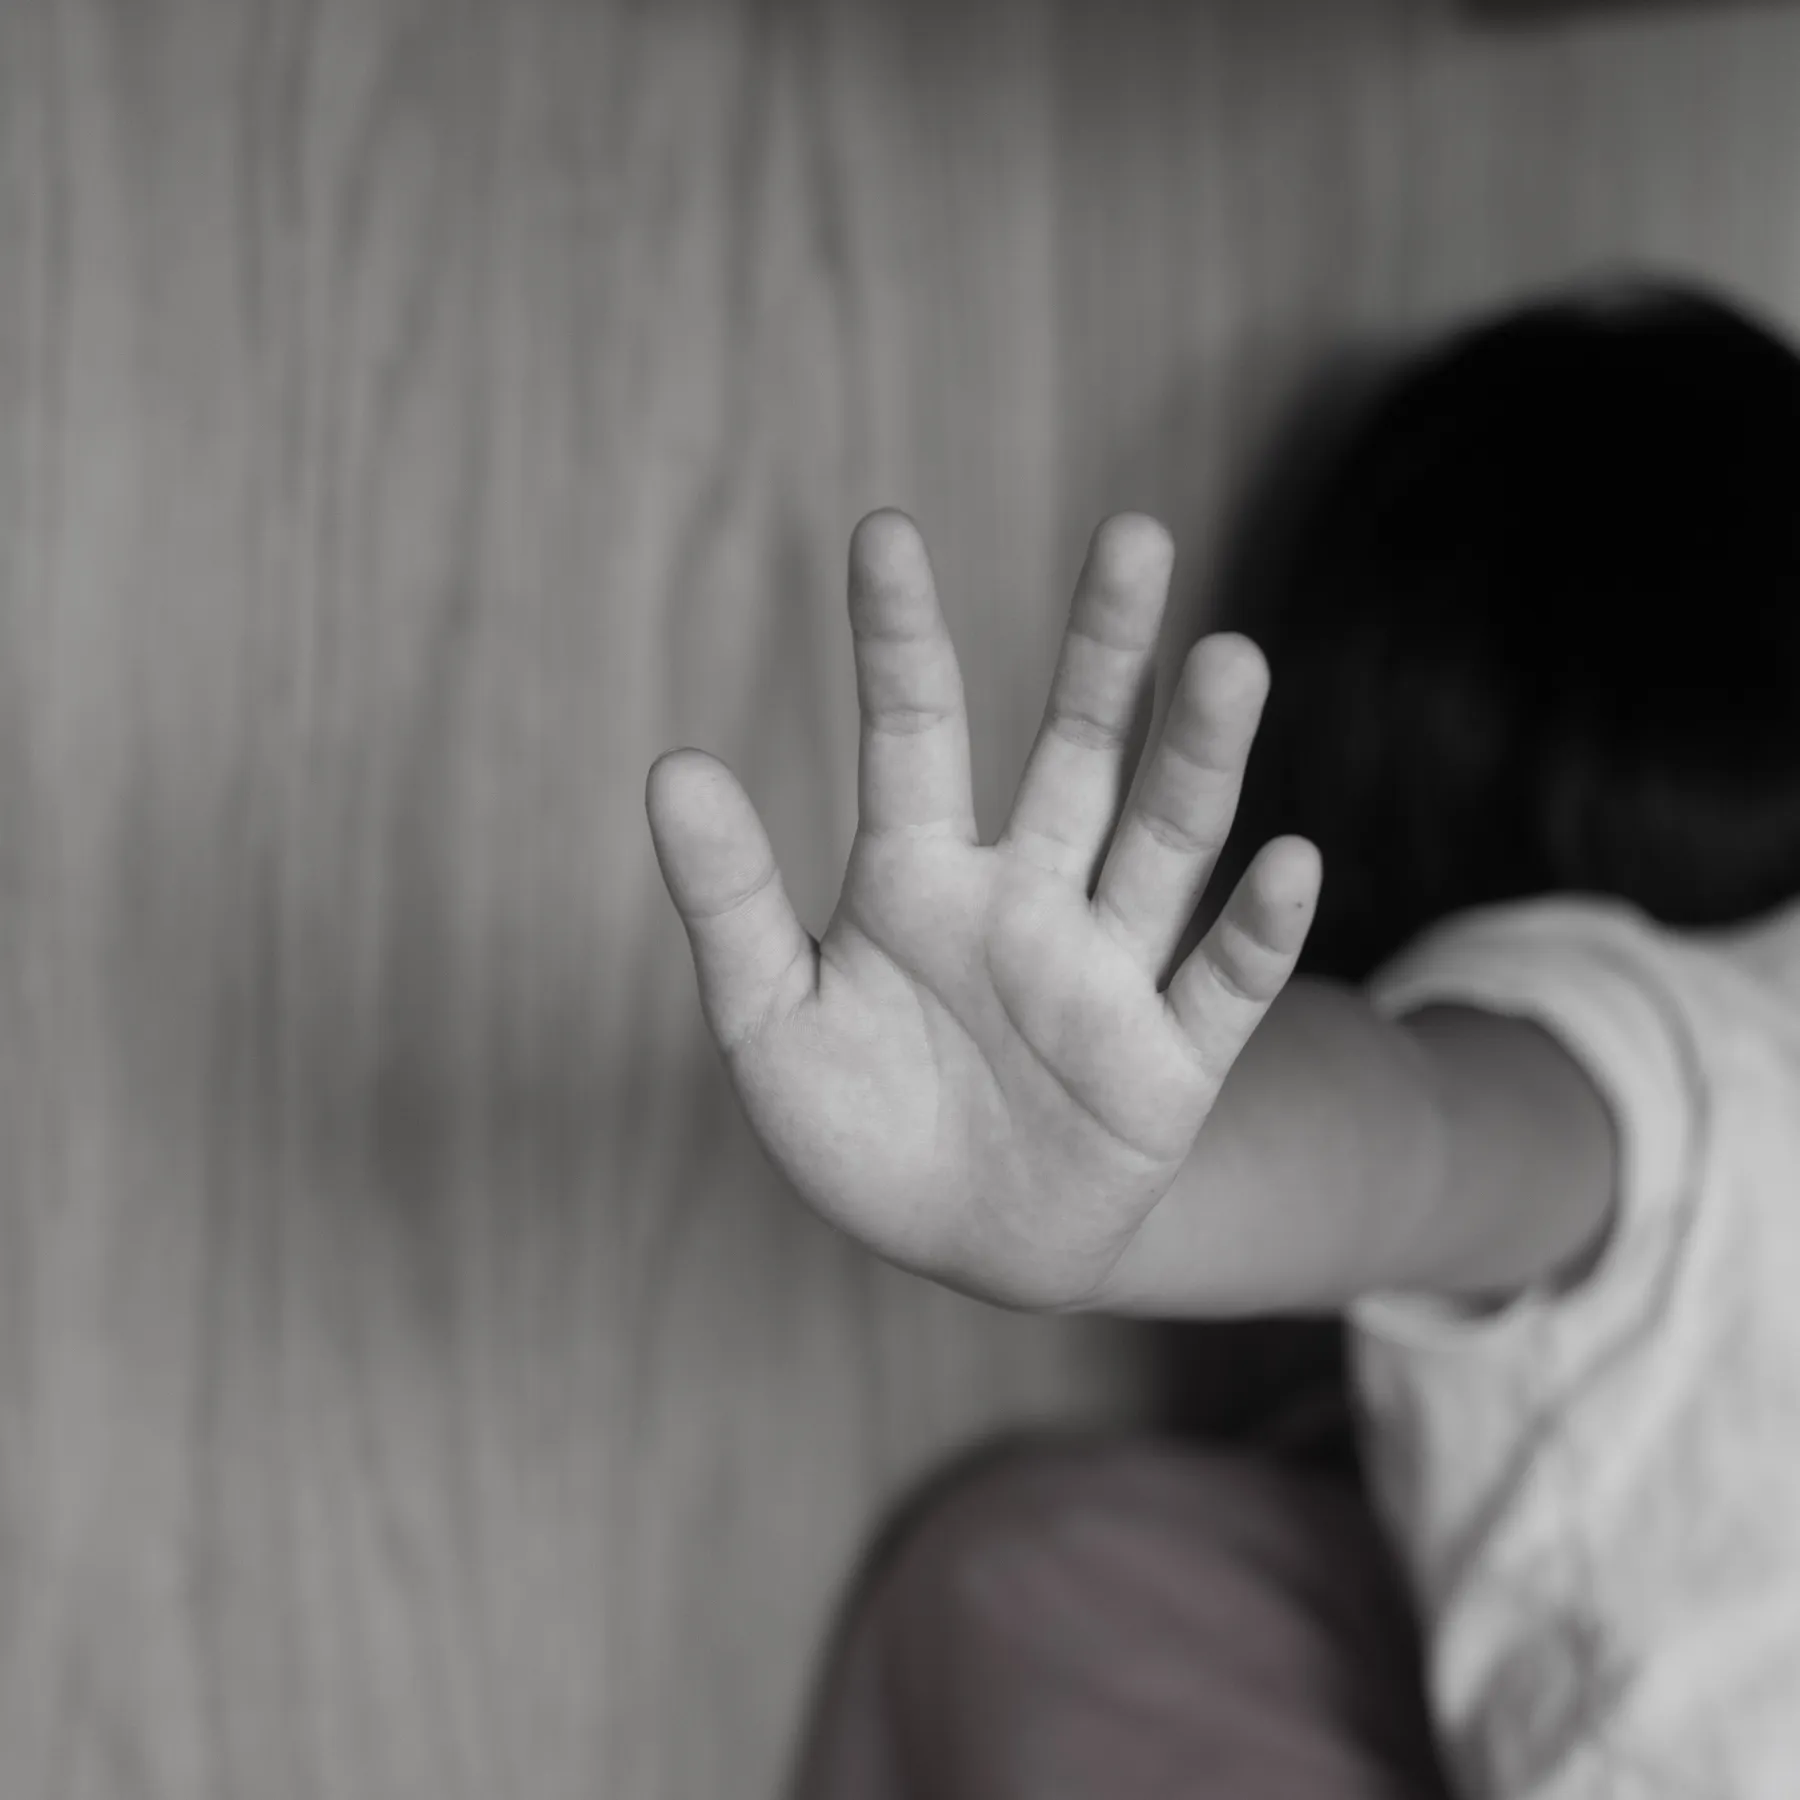 اتهام عامل رعاية أطفال بالاعتداء جنسياً على 91 طفلاً في استراليا